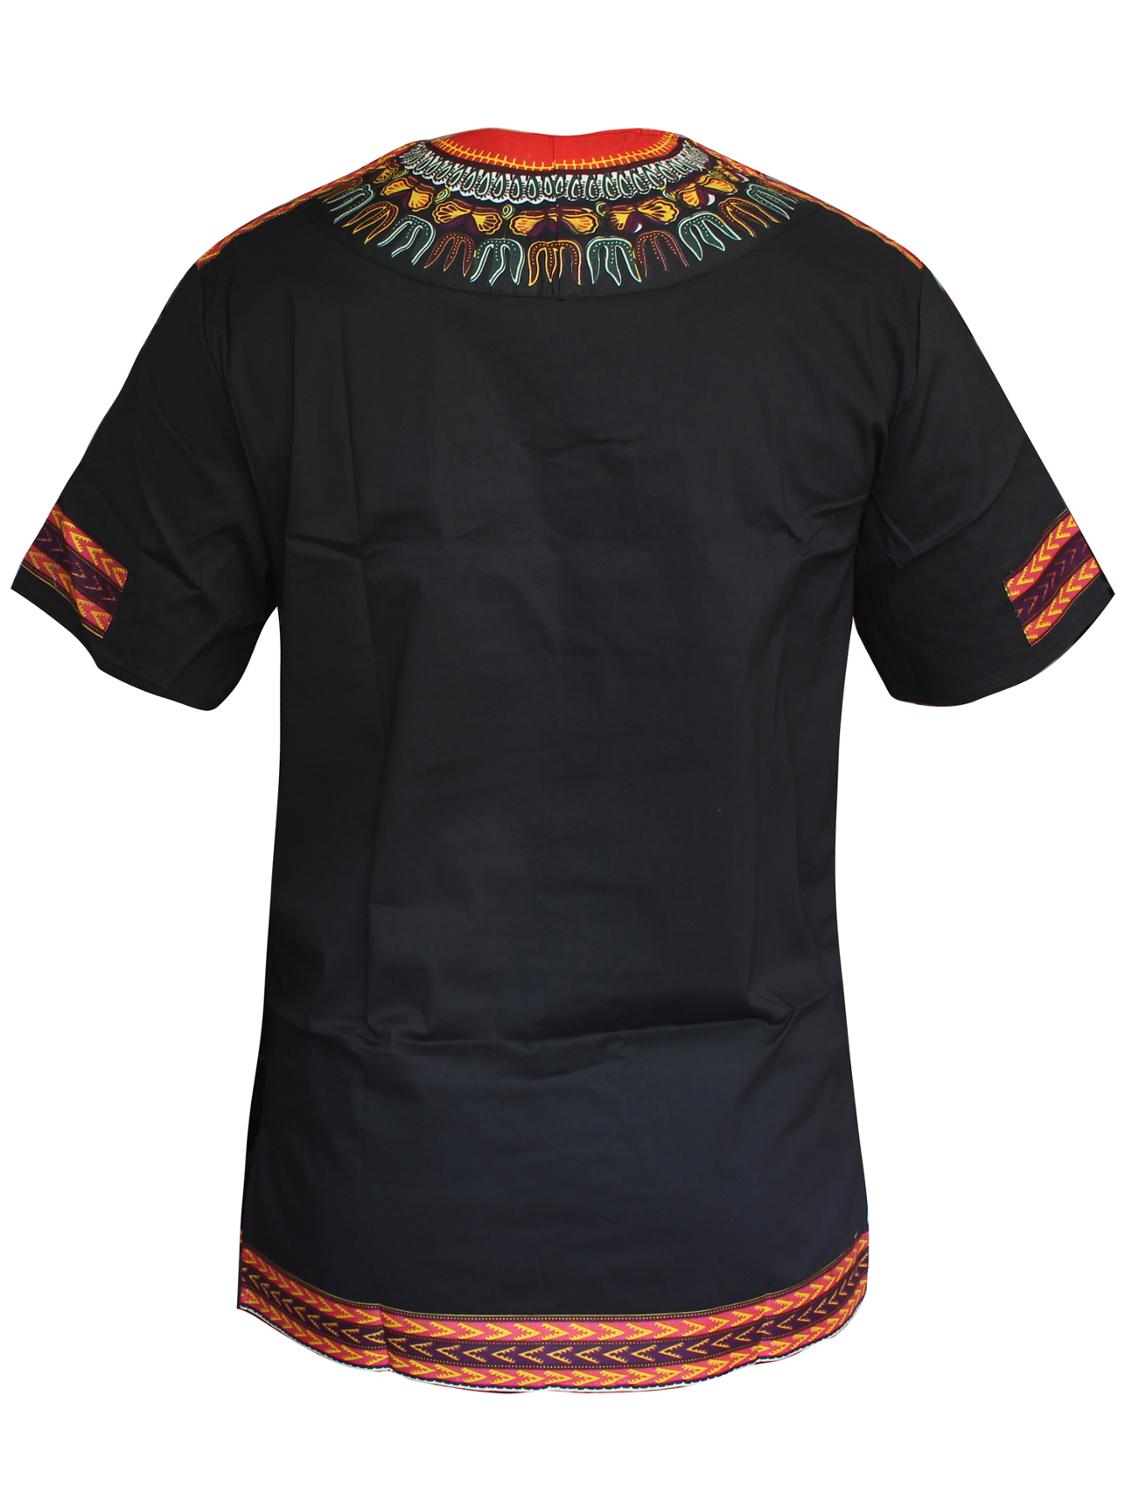 T-shirt-en-coton-avec-impression-de-cire-pour-homme-v-tements-africains-en-Bazin-kurta